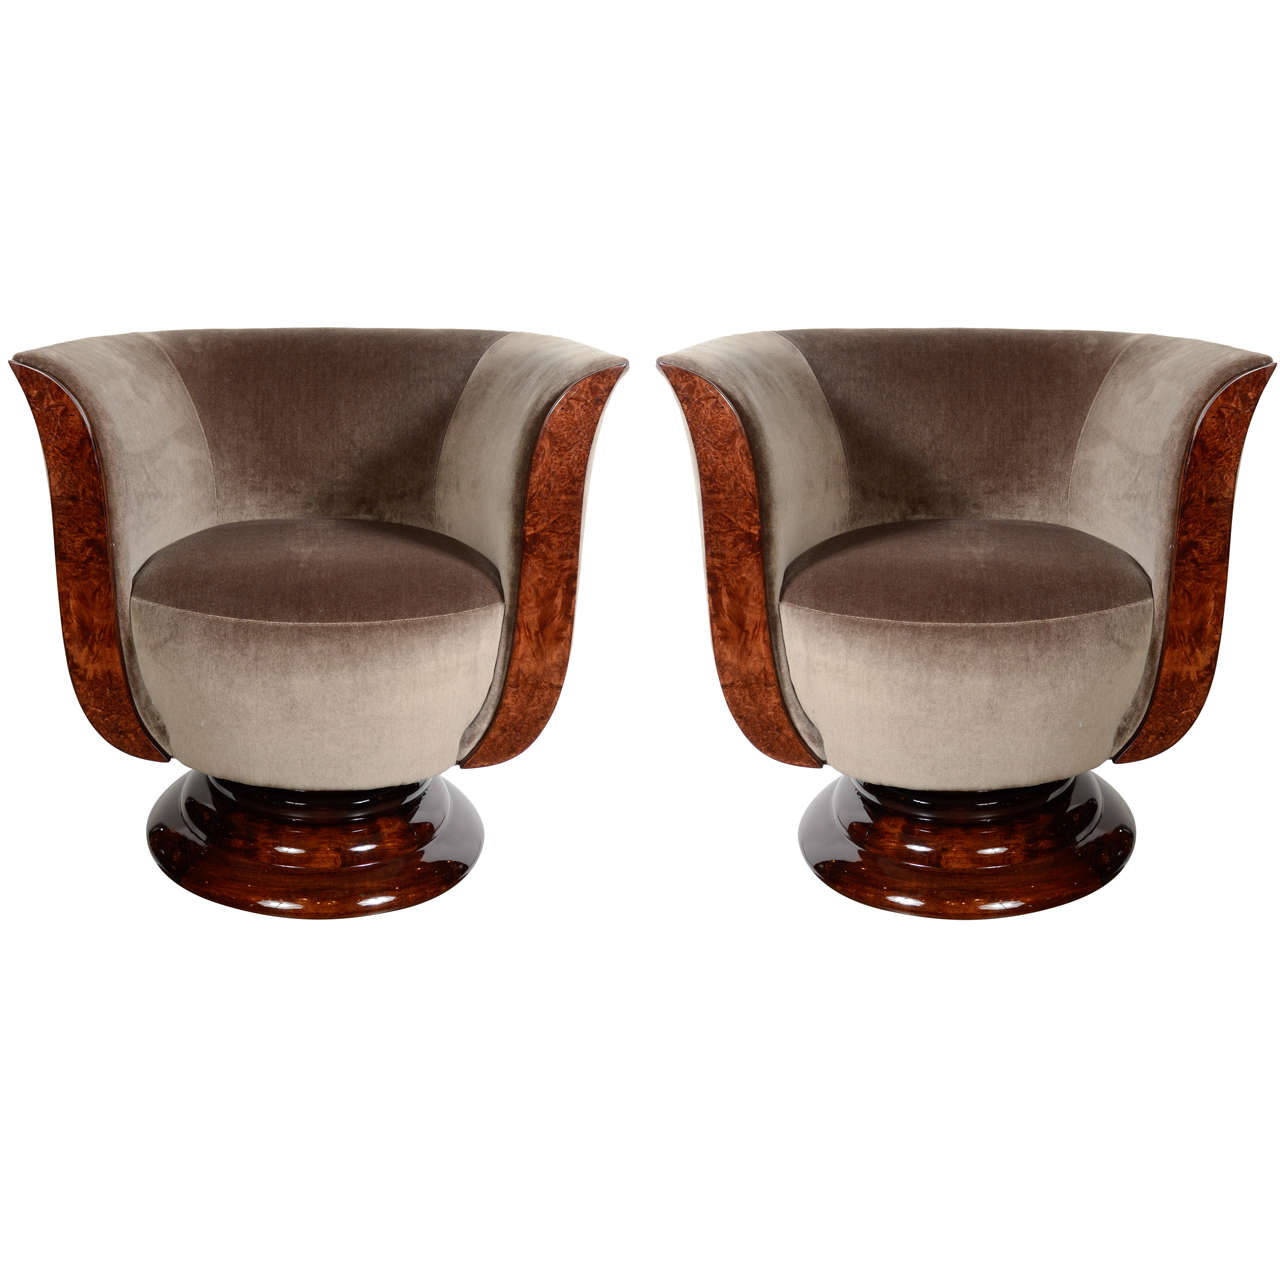 Stunning Pair of Art Deco Tulip Chairs